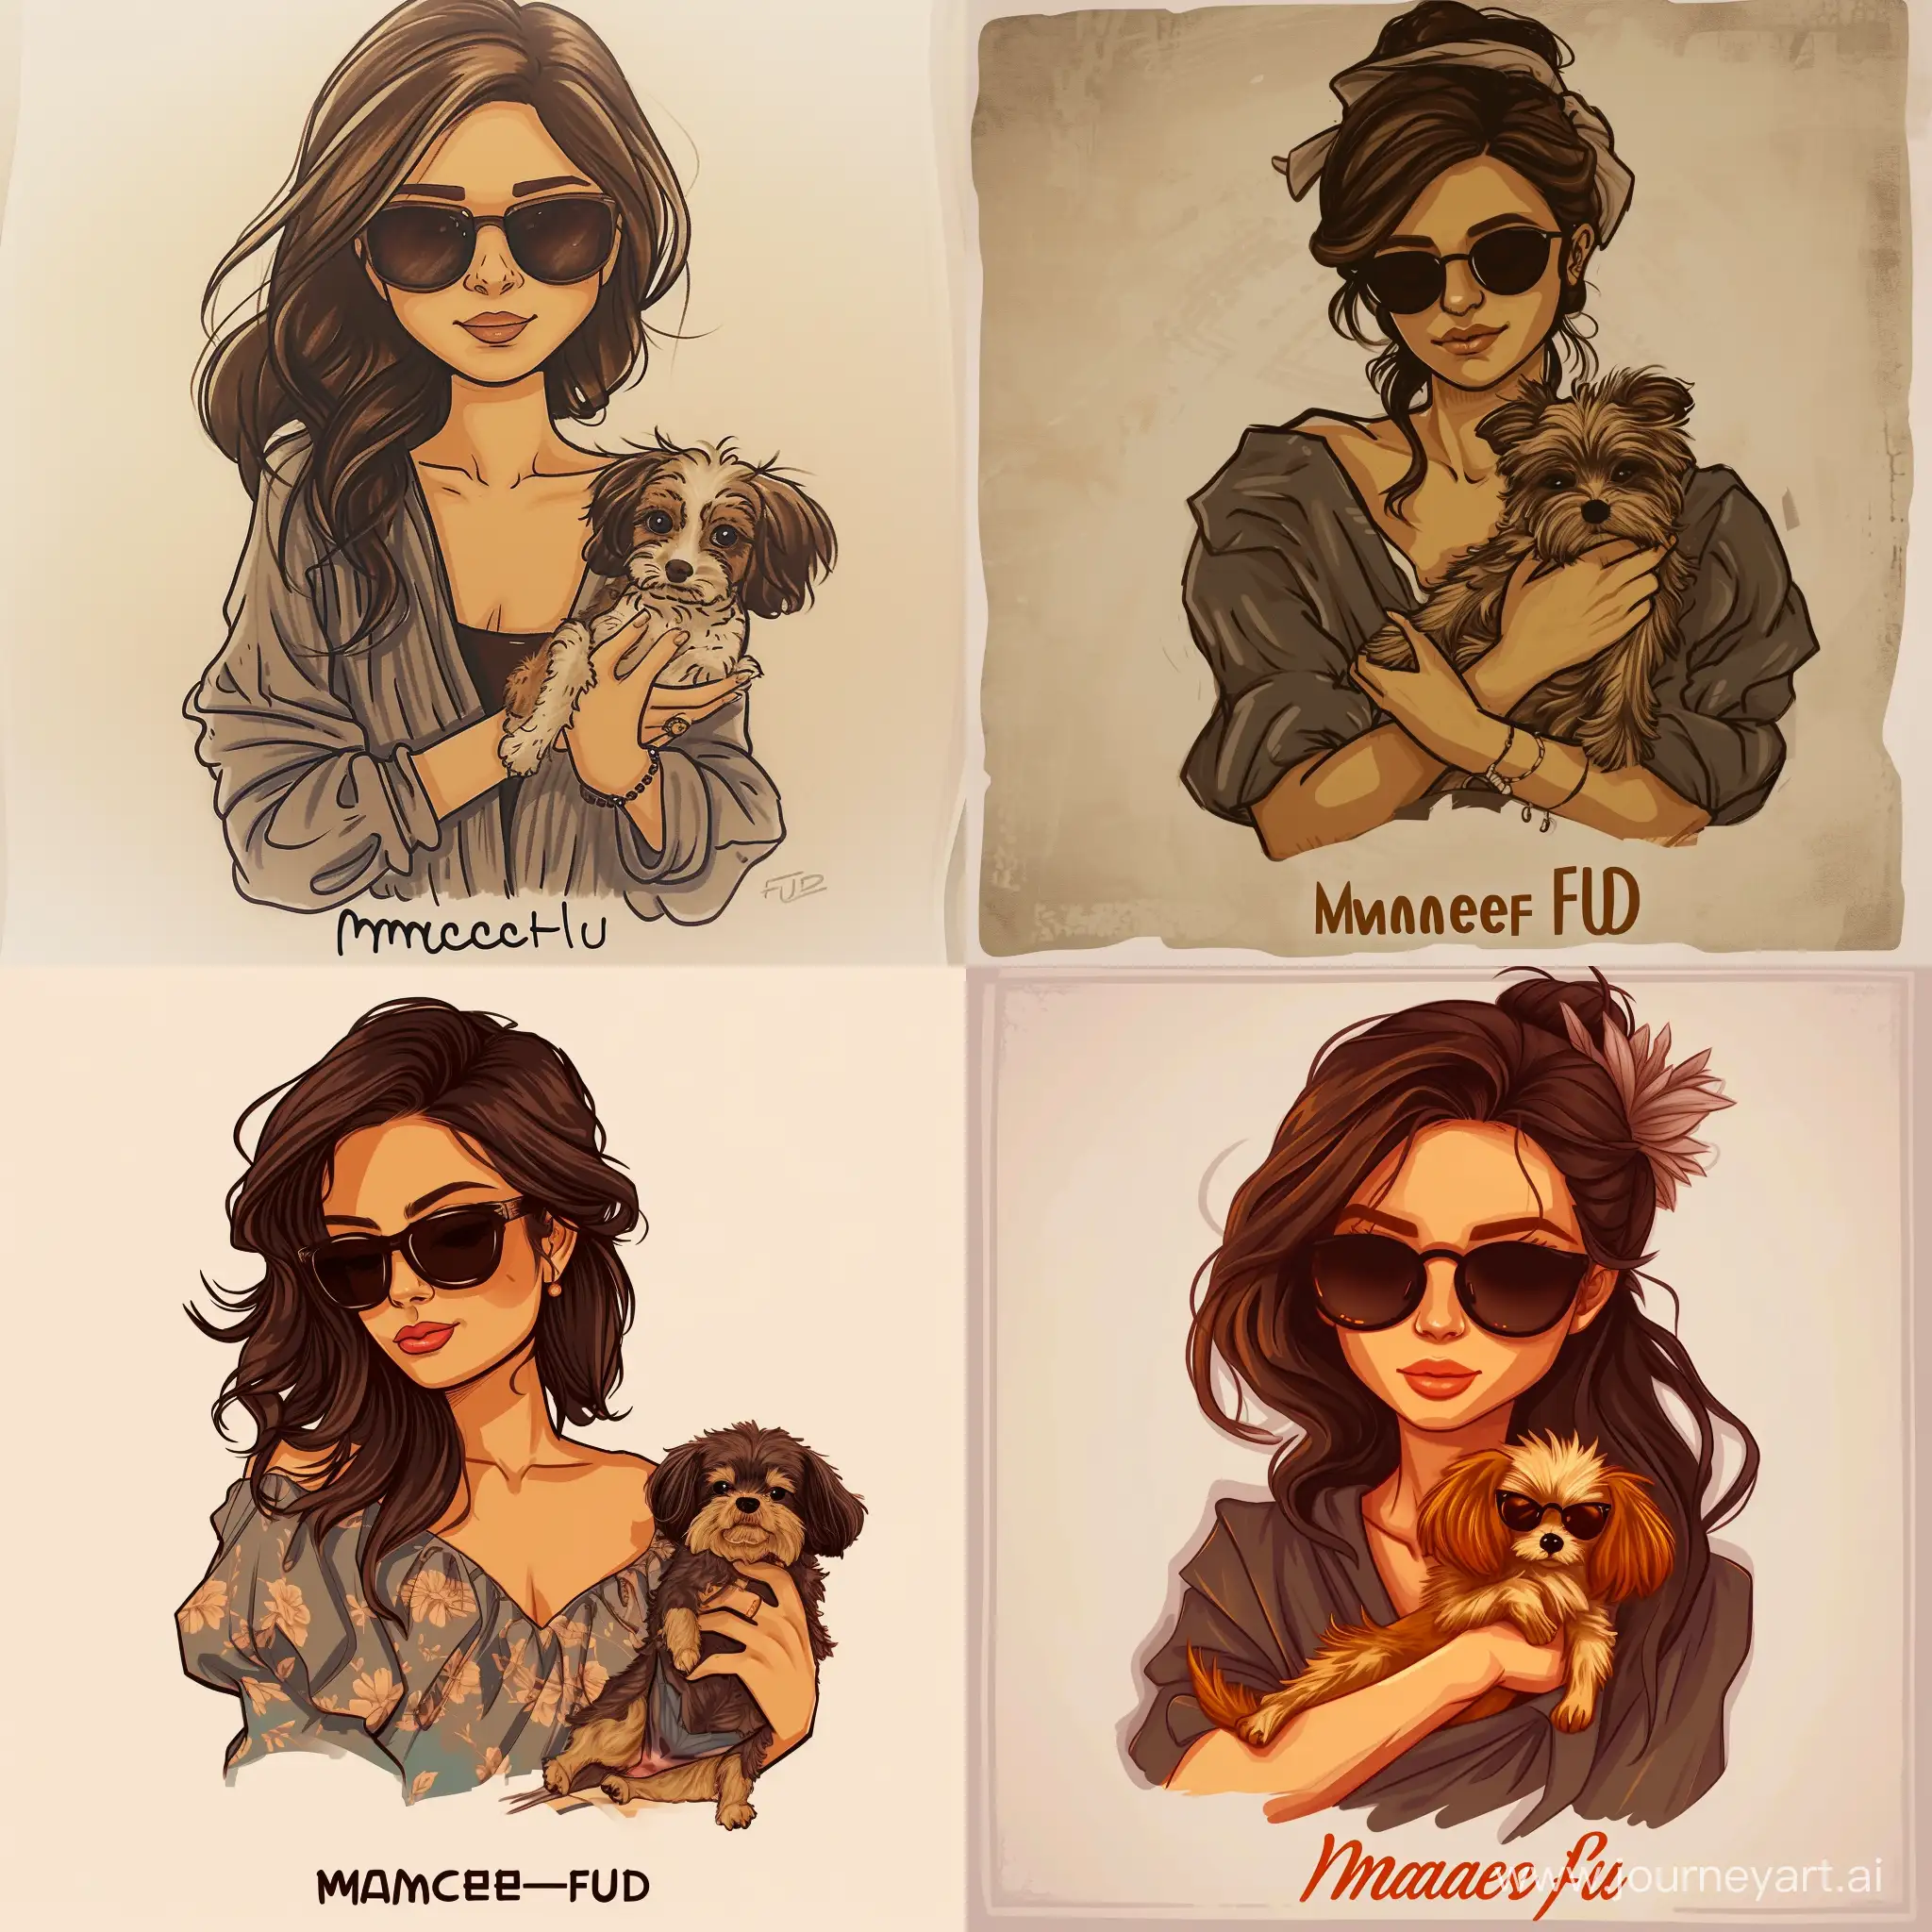 нарисуй девушку с темно коричневыми волосами, с солнечными очками и маленькой собачкой на руках, снизу надпись *MadameFUD*